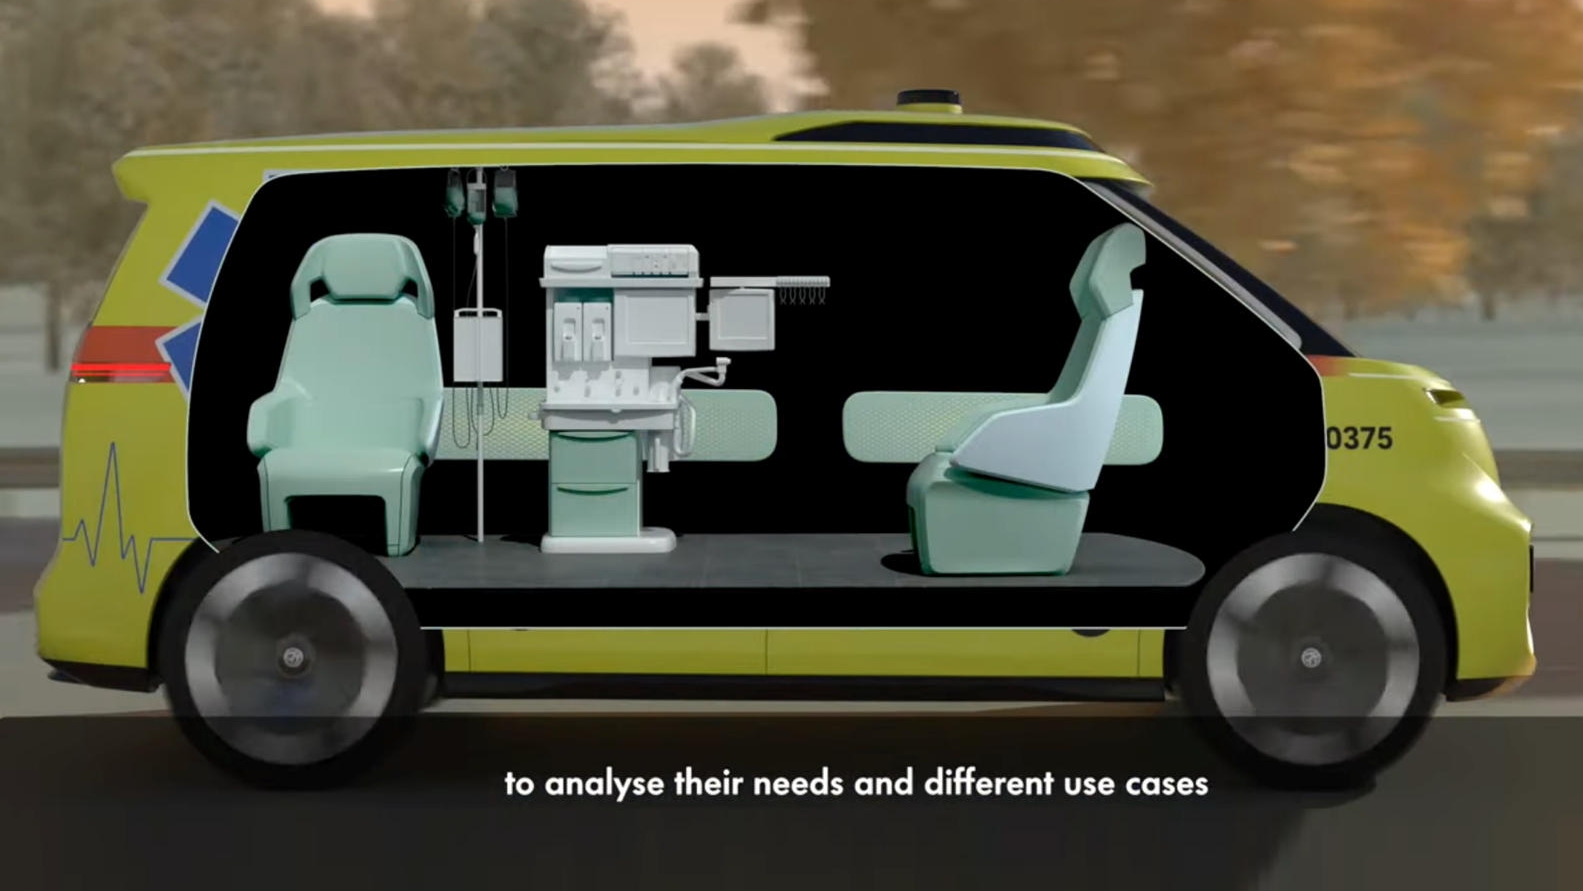 透過自動化駕駛可以讓車內的格局配置改變，兩名救護員可以同時照護病患。(圖片來源/ 福斯)